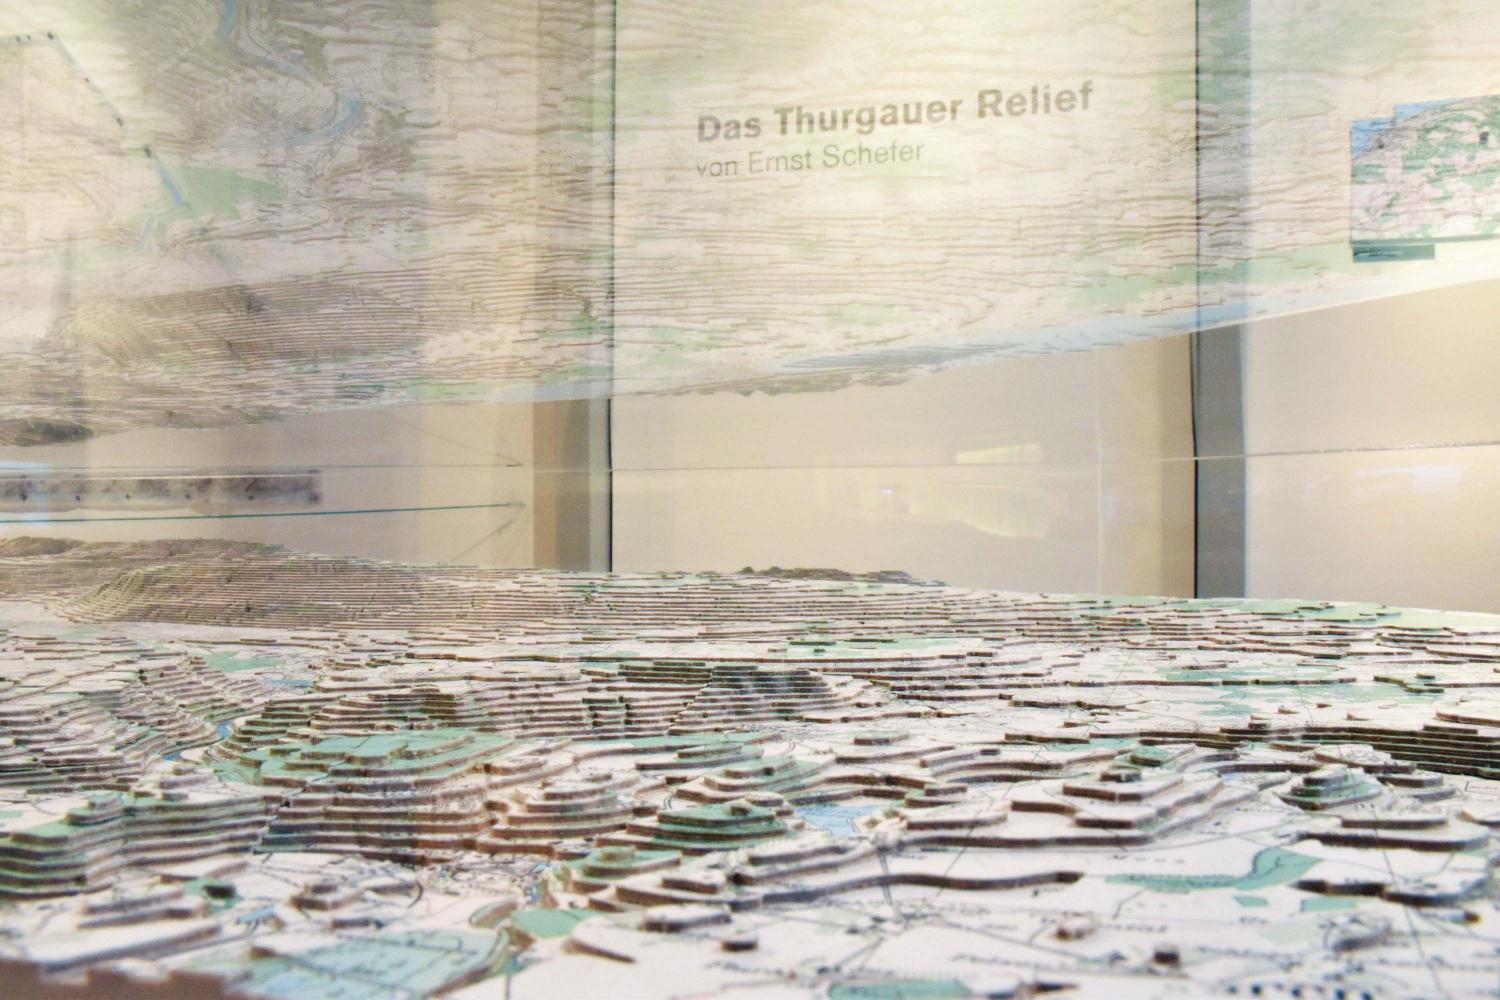 Das Thurgauer Relief in der Kabinettausstellung.